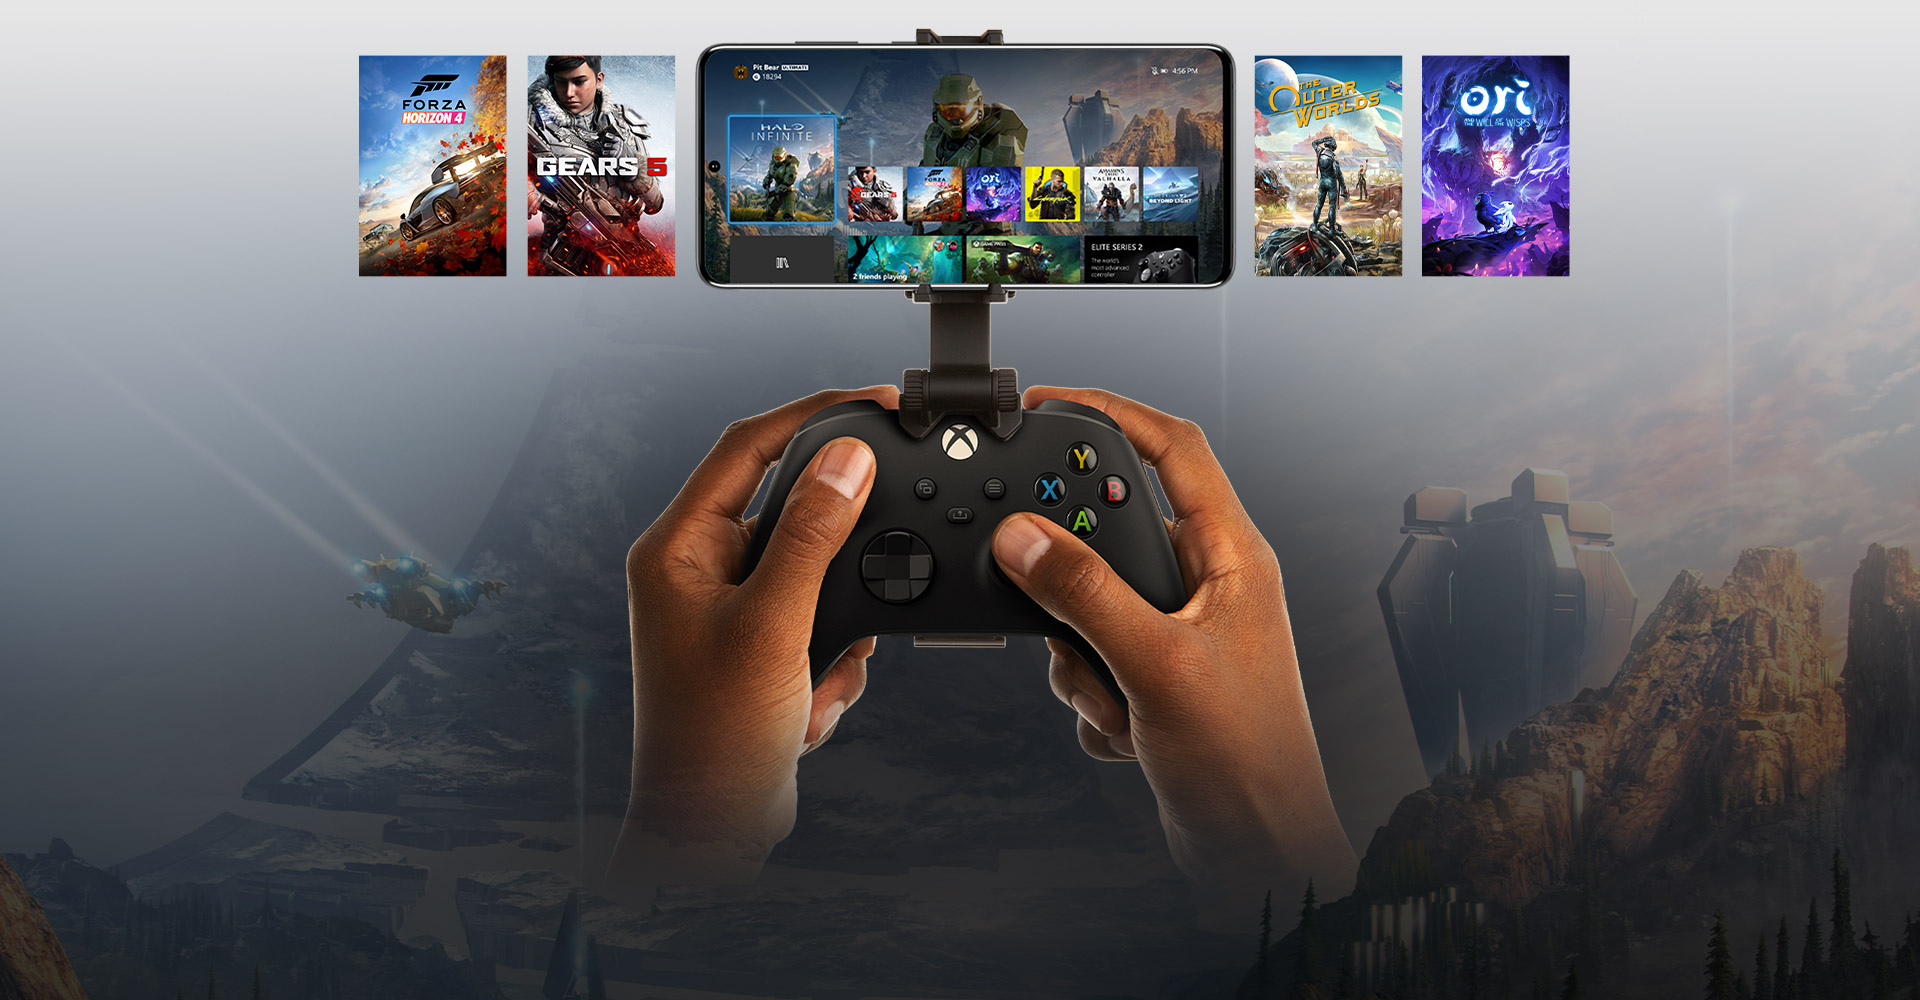 Mobilné zariadenie pripevnené k ovládaču pre Xbox s výberom titulov na hranie. Svet hry Halo Infinite sa rozprestiera za hranice telefónu.